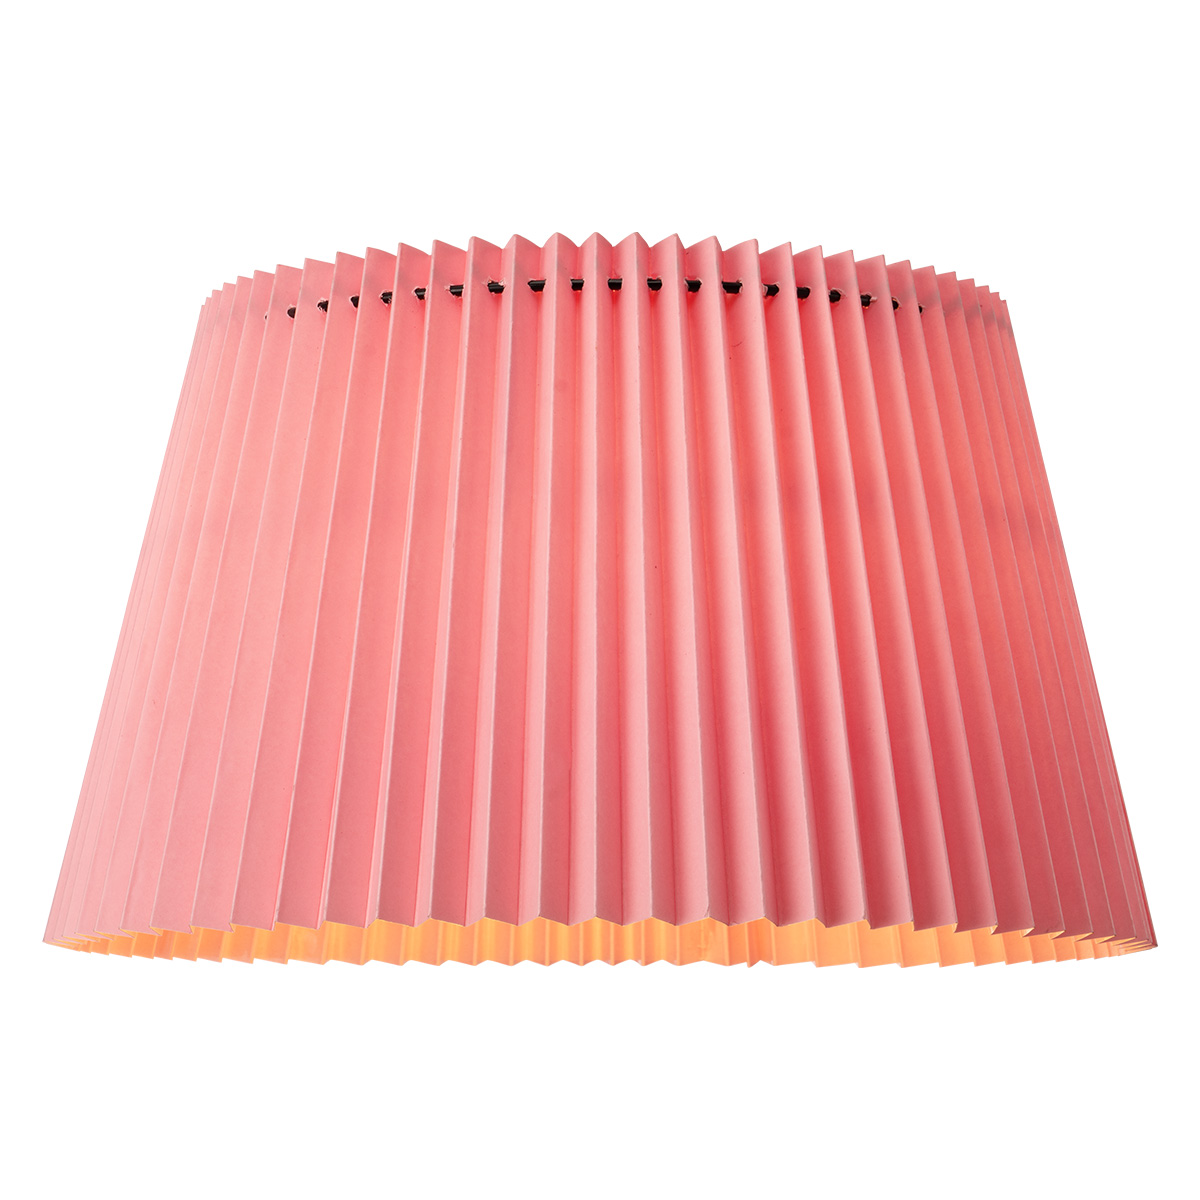 Tangla Lighting - Lampshade - metal and paper - pink - taper - diameter 40cm - E27